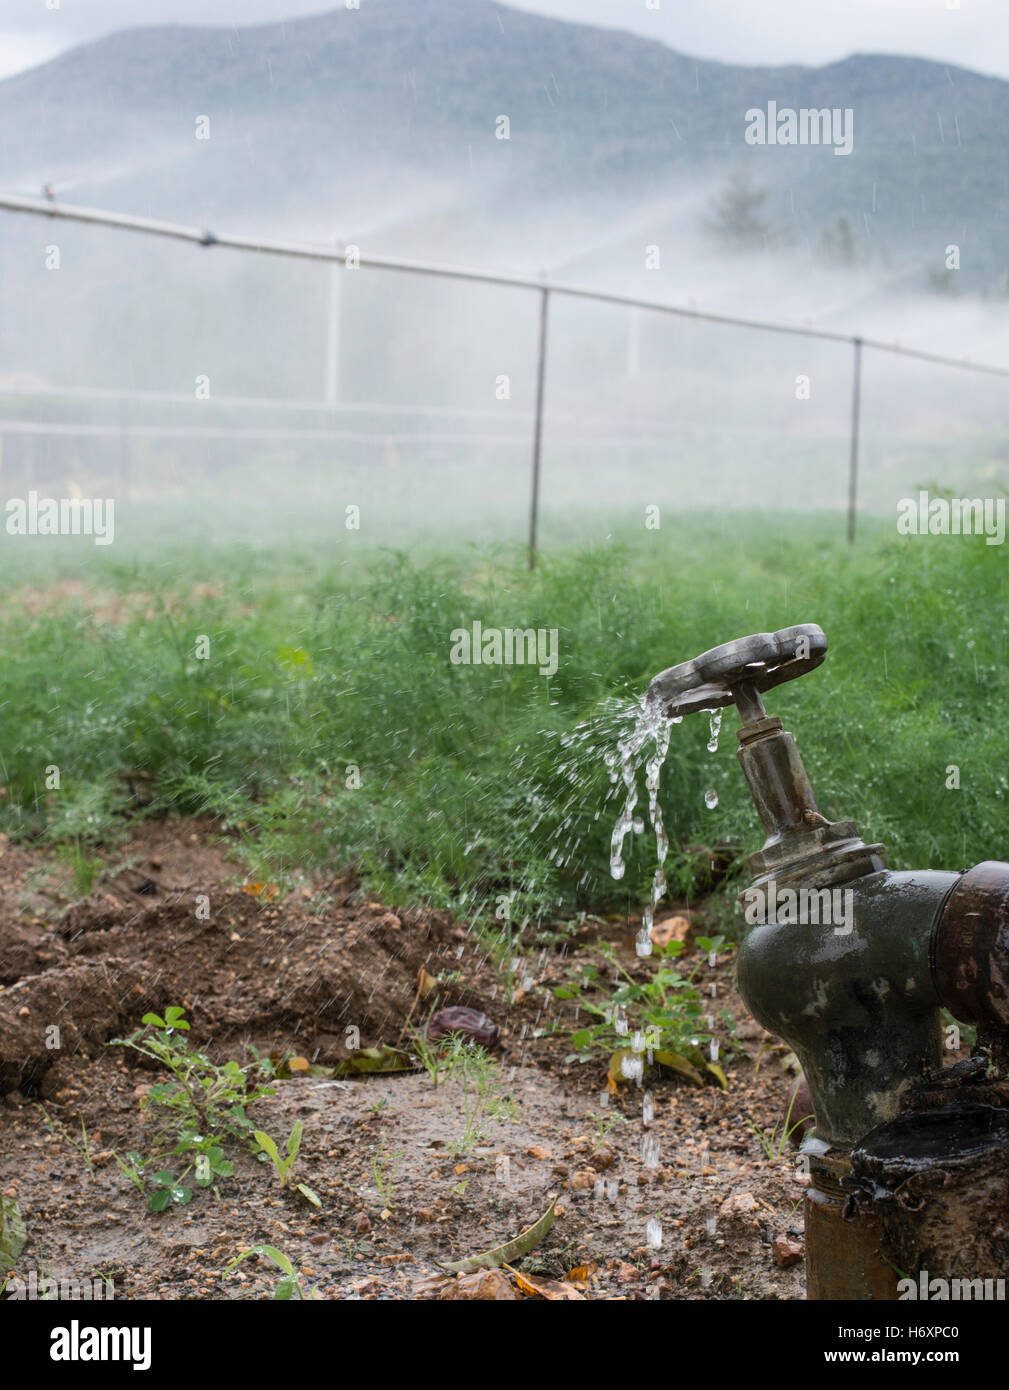 Landwirtschaft-Rohre und Wasser für die Bewässerung von Pflanzen Stockfoto